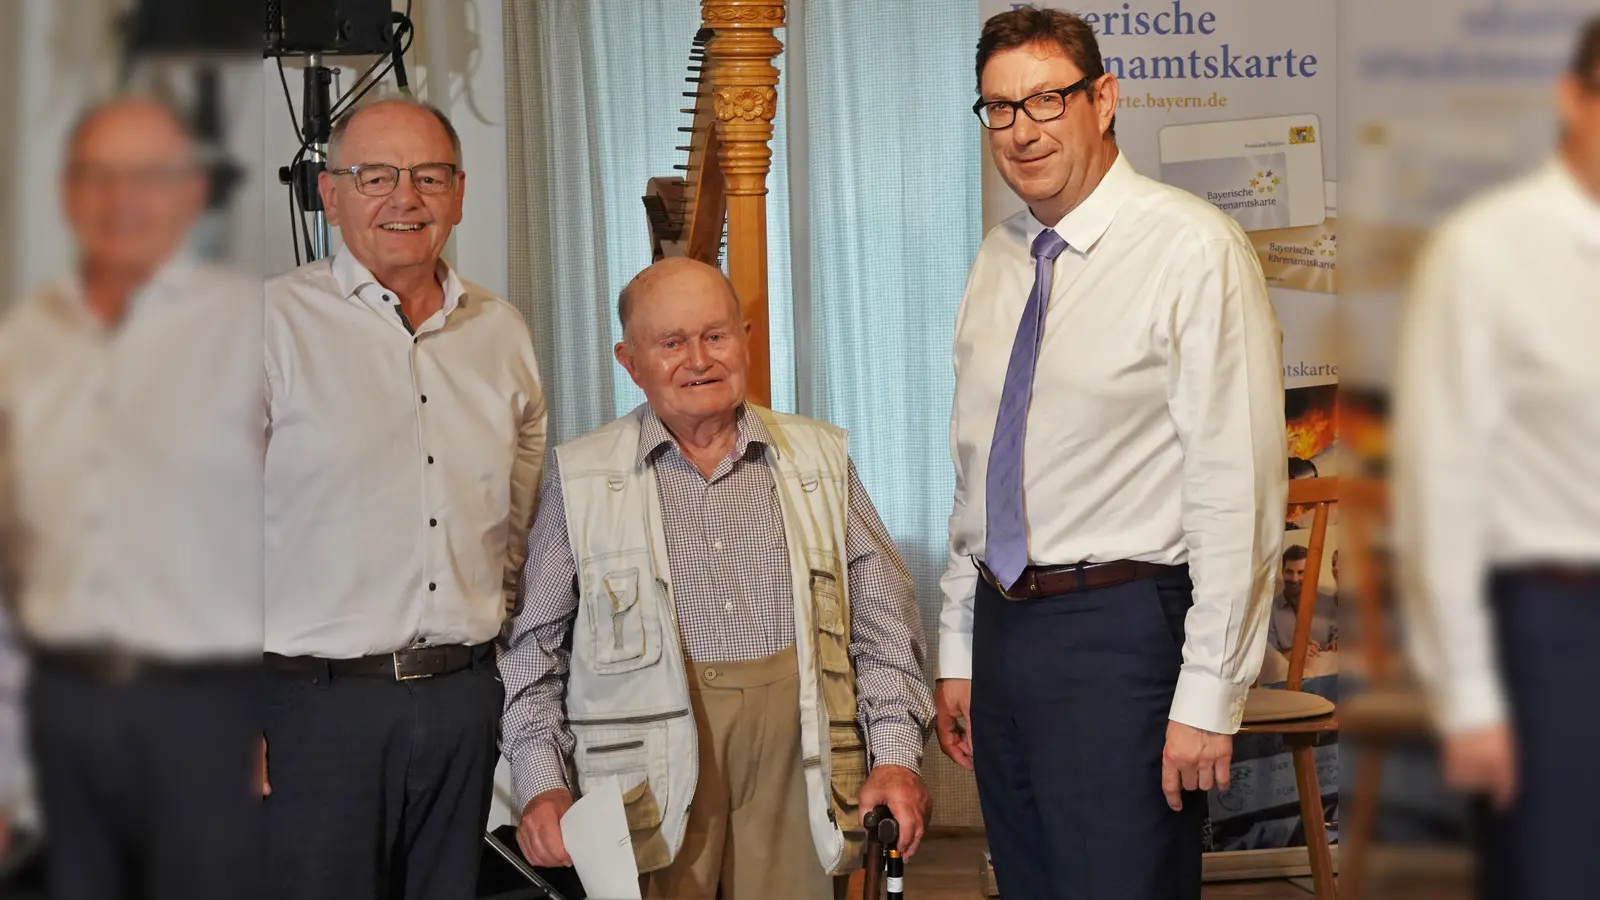 Der 95-jährige Josef Popp aus Finsing erhielt Dank, Urkunde und Goldene Ehrenamtskarte von Landrat Martin Bayerstorfer (r.) für über 70 Jahre ehrenamtliche Tätigkeit beim Bayerischen Roten Kreuz. Ein weiterer Gratulant war der Finsinger Bürgermeister Max Kressirer. (Foto: LRA Erding)